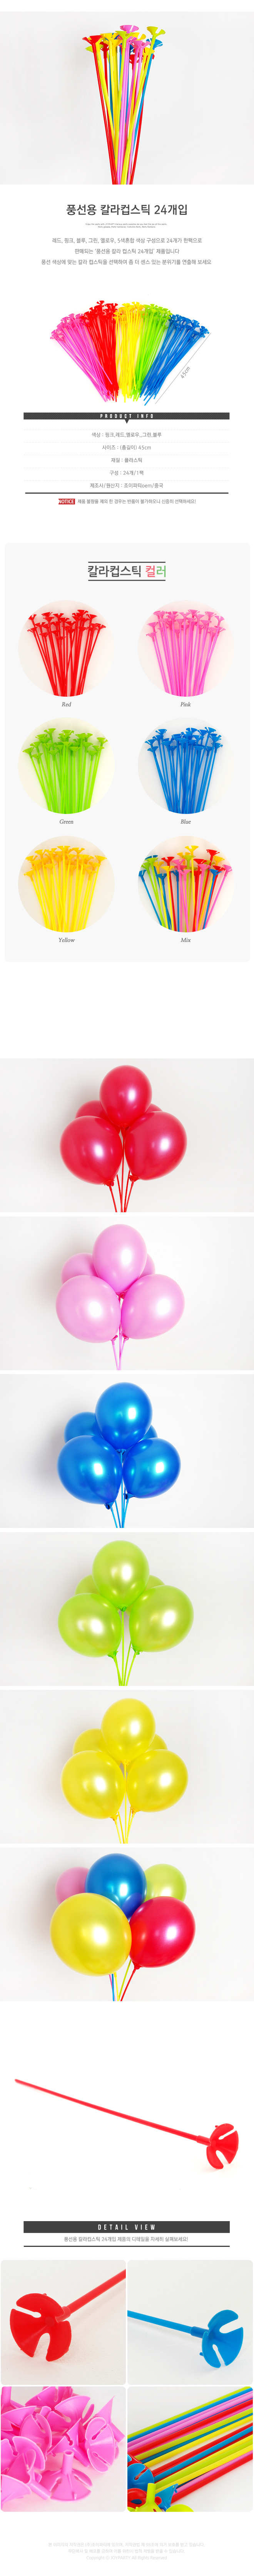 balloonst24p_roll_copy2.jpg